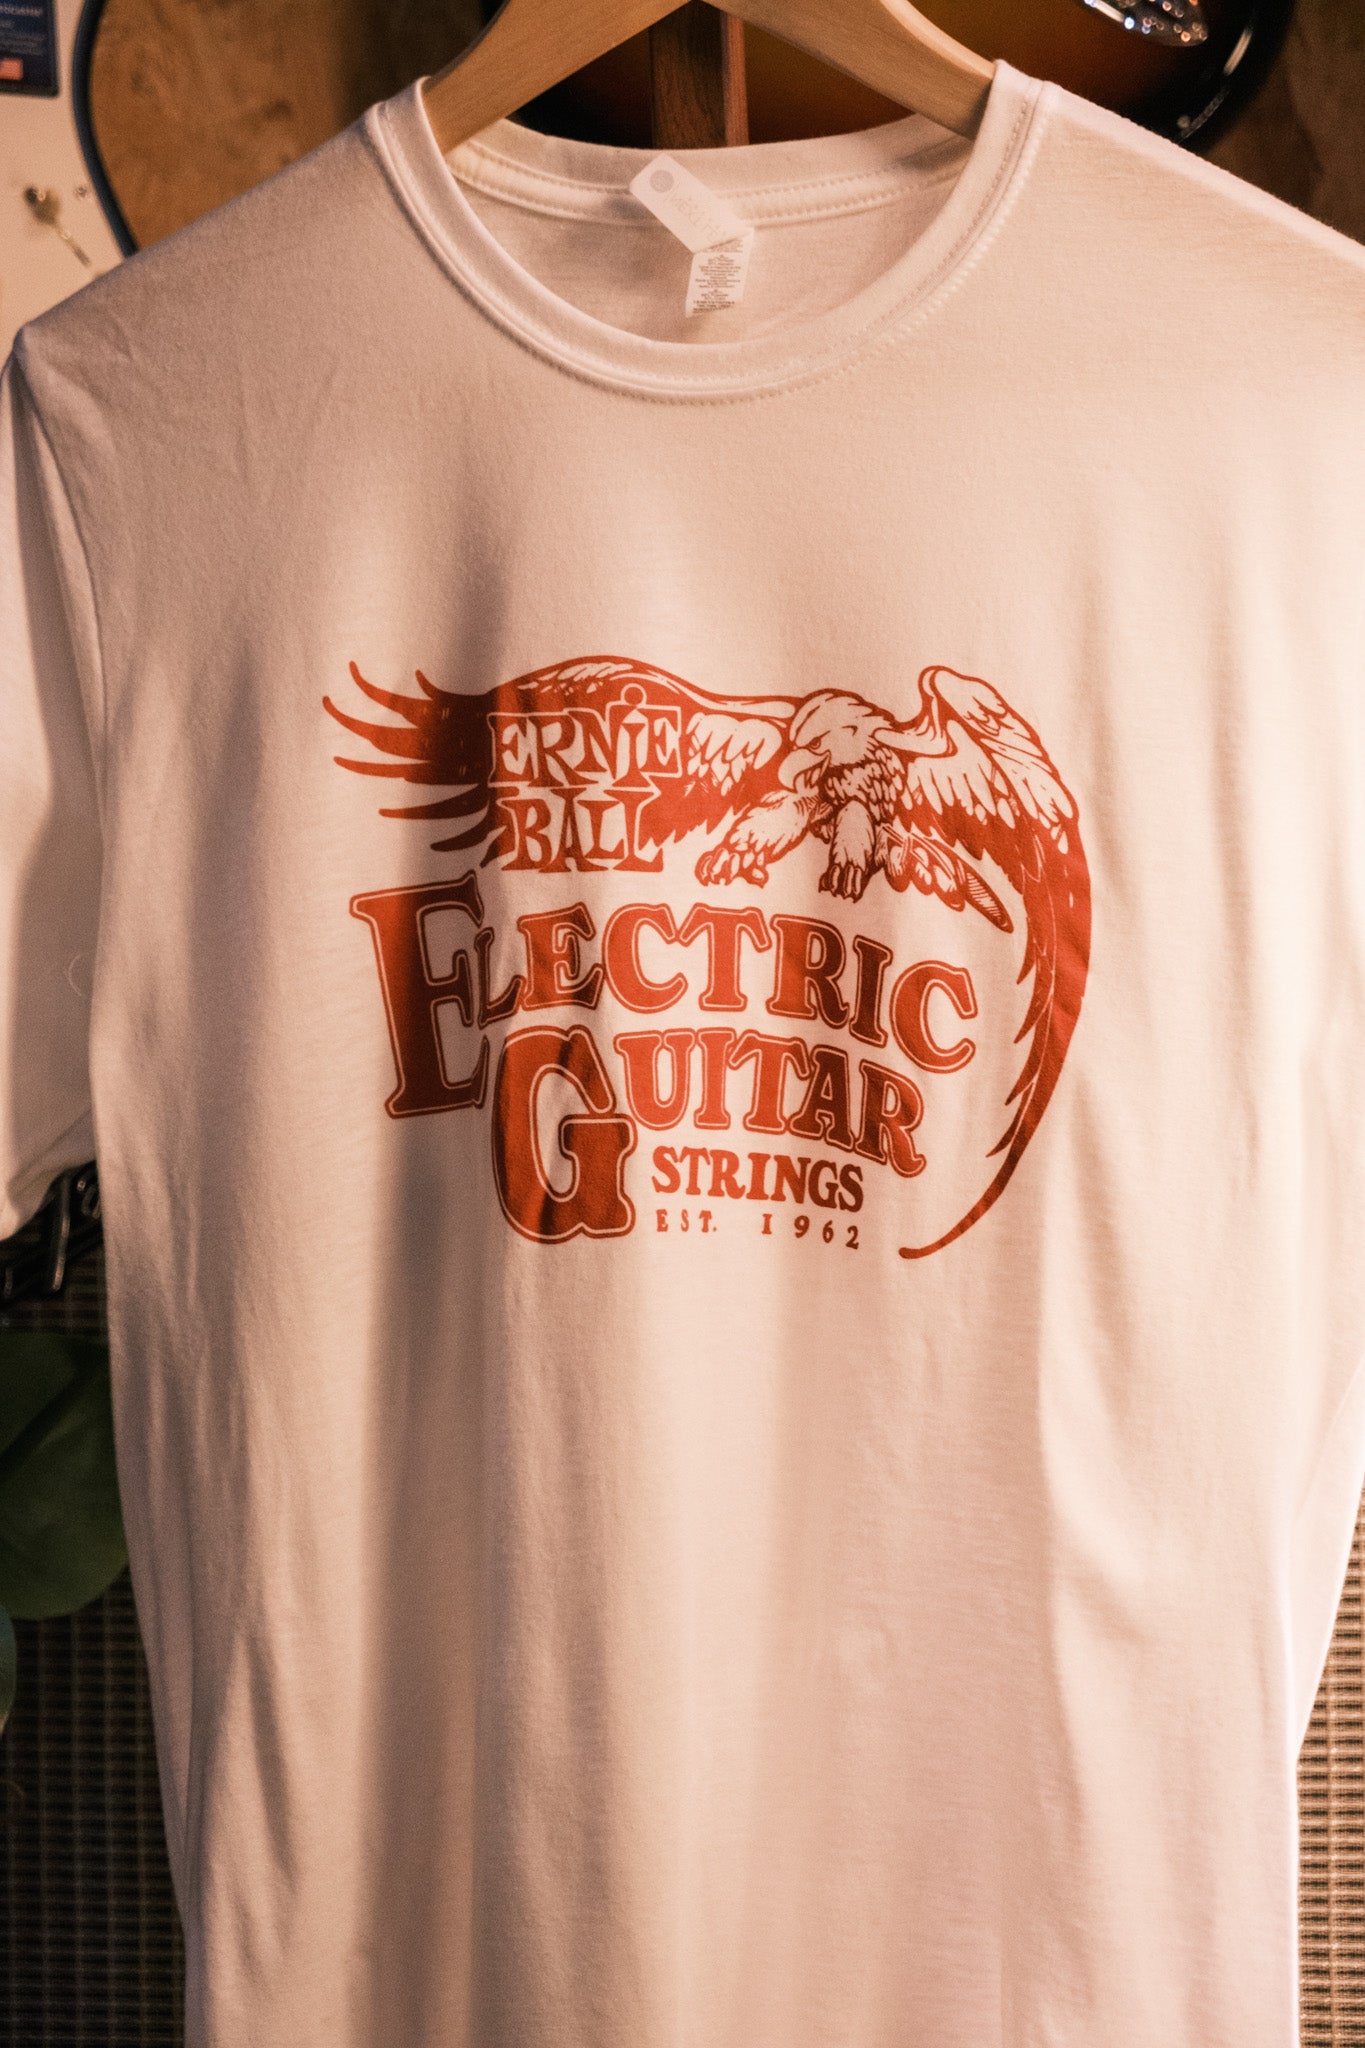 Ernie Ball '62 Electric Guitar T-Shirt Unisex